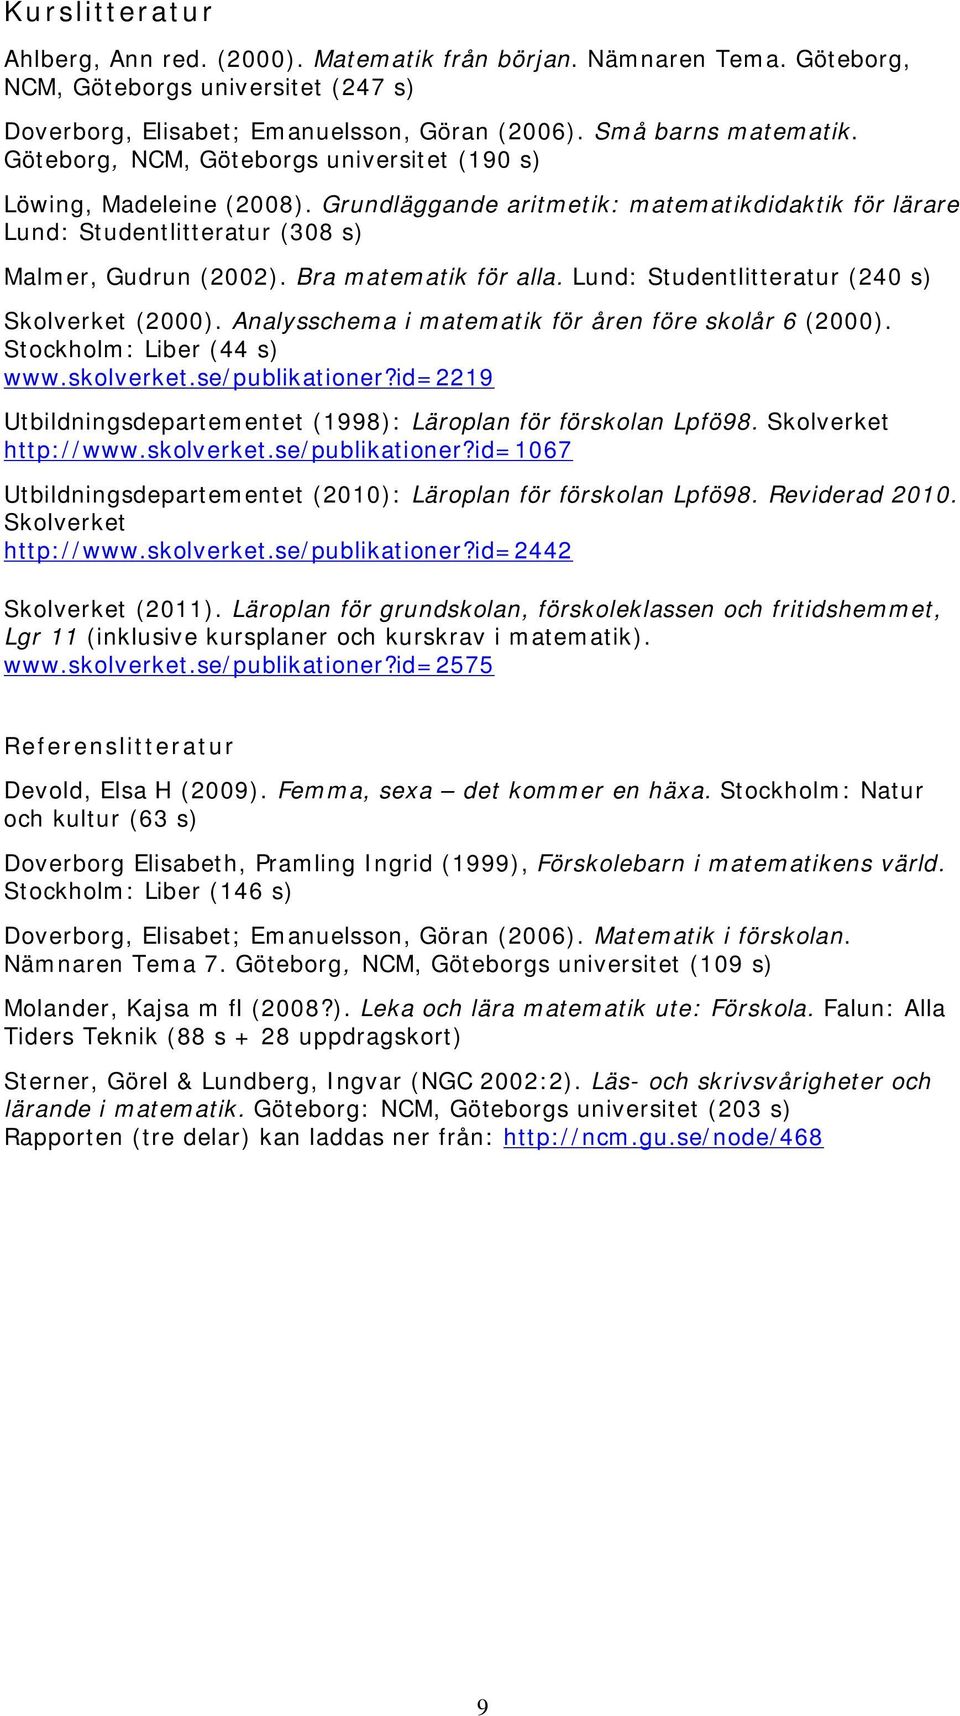 Bra matematik för alla. Lund: Studentlitteratur (240 s) Skolverket (2000). Analysschema i matematik för åren före skolår 6 (2000). Stockholm: Liber (44 s) www.skolverket.se/publikationer?